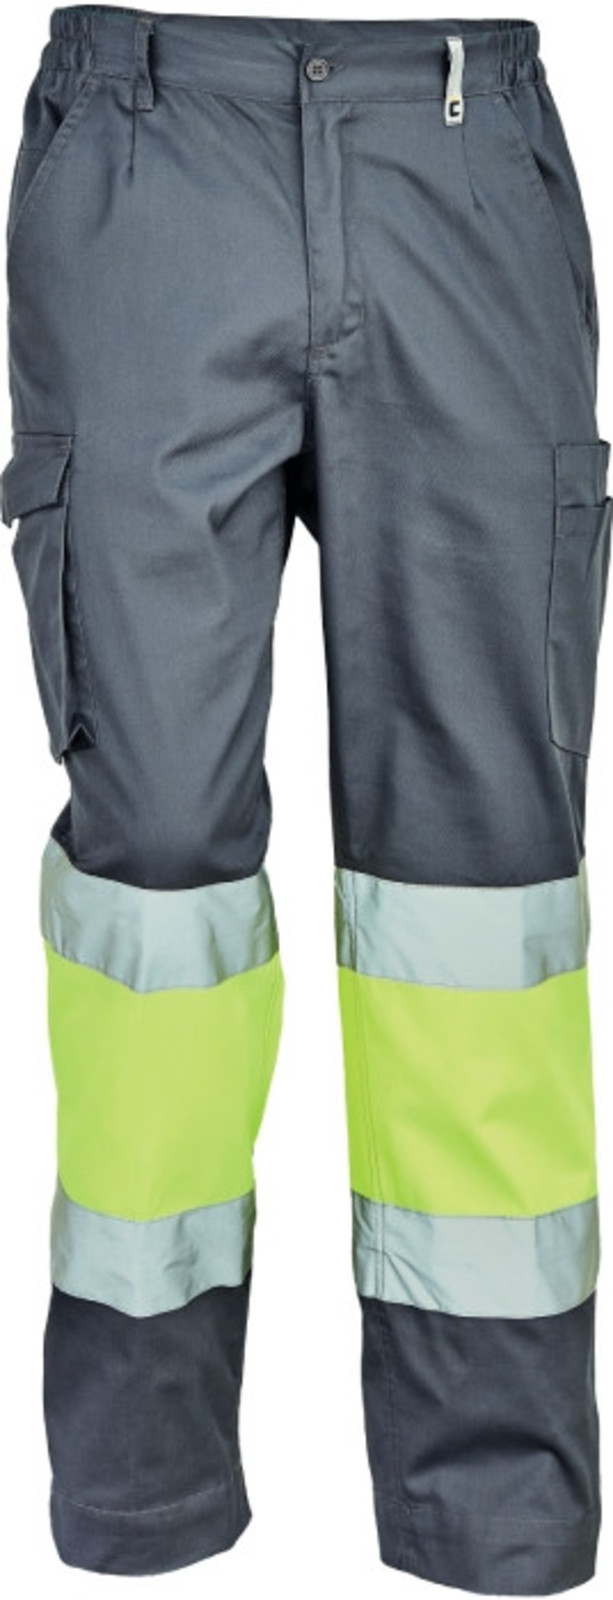 Pracovné reflexné nohavice Cerva Ciudades Bilbao HV - veľkosť: 48, farba: sivá/žltá